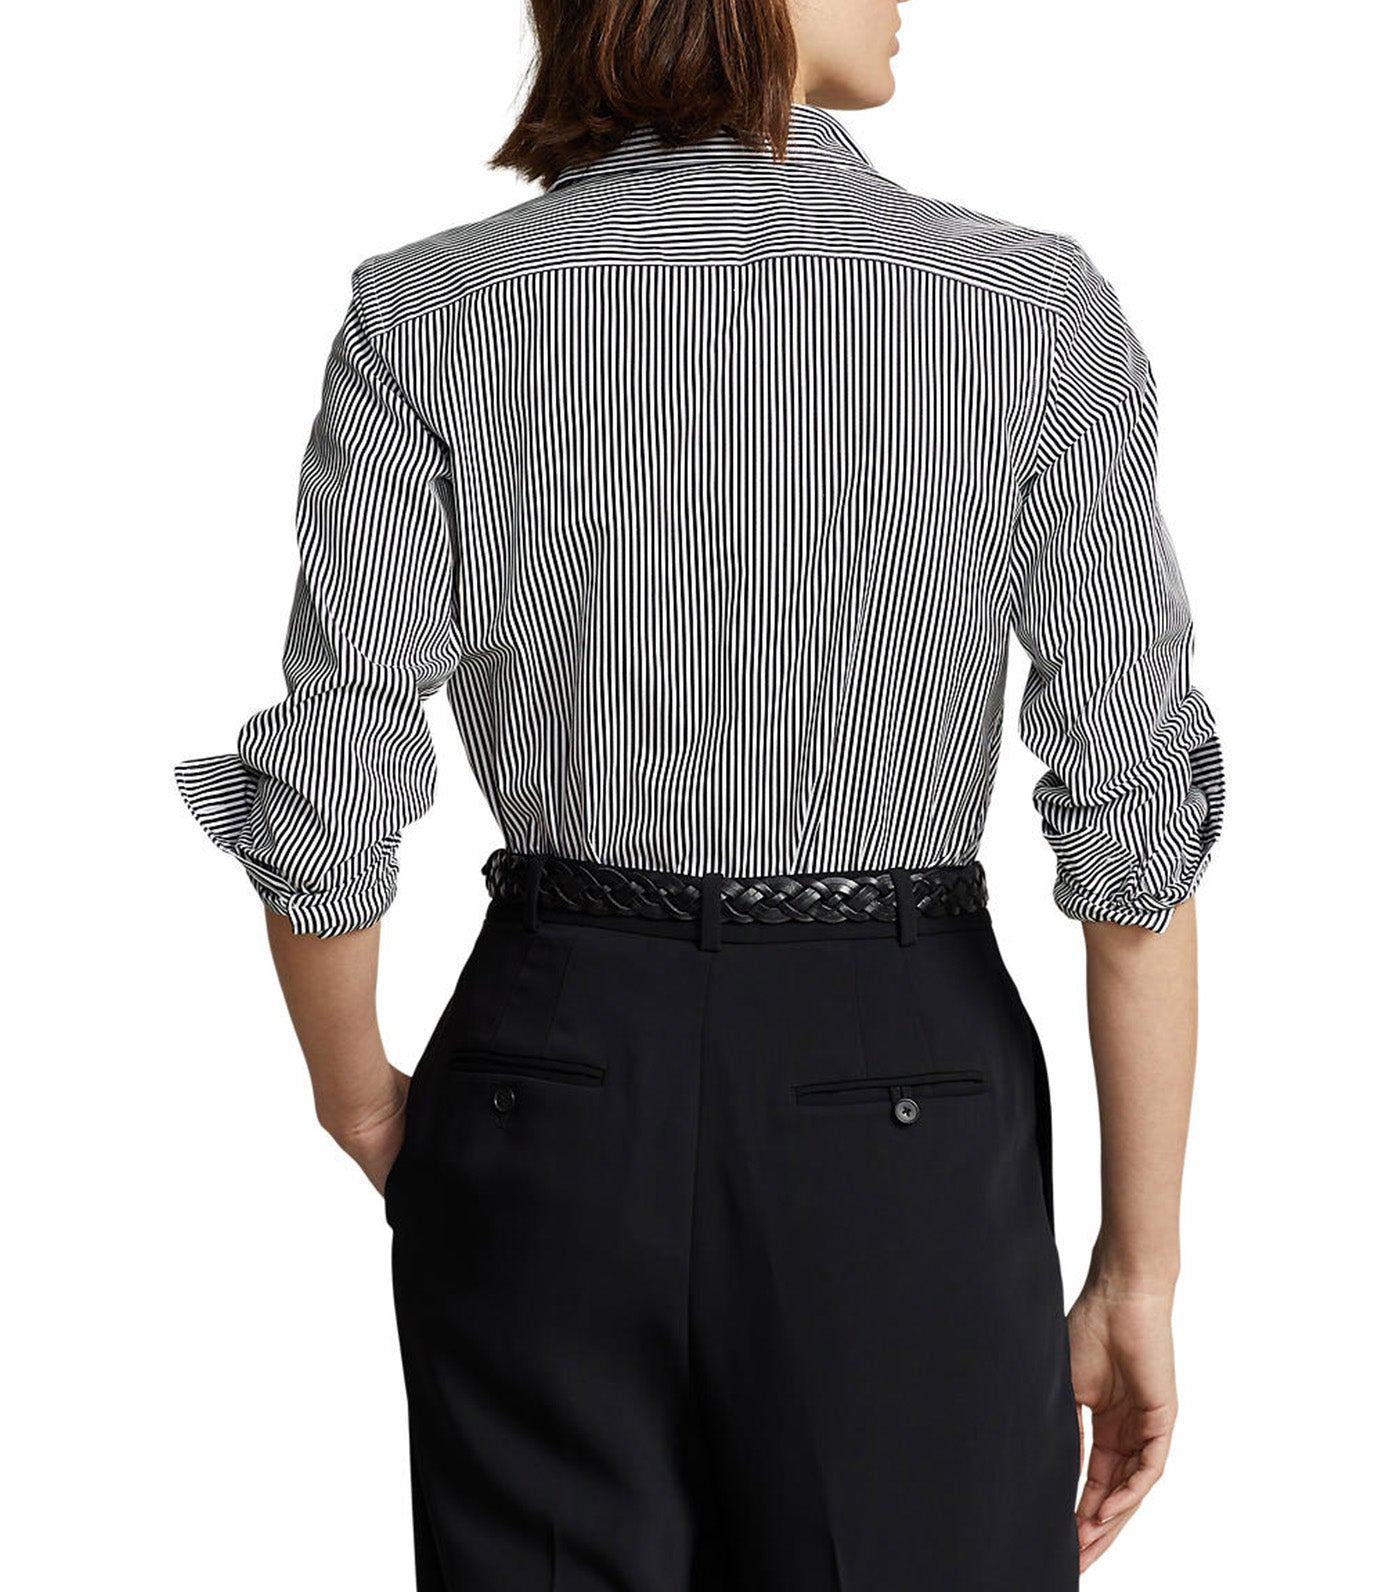 Polo Ralph Lauren Women's Striped Cotton Shirt White/Polo Black